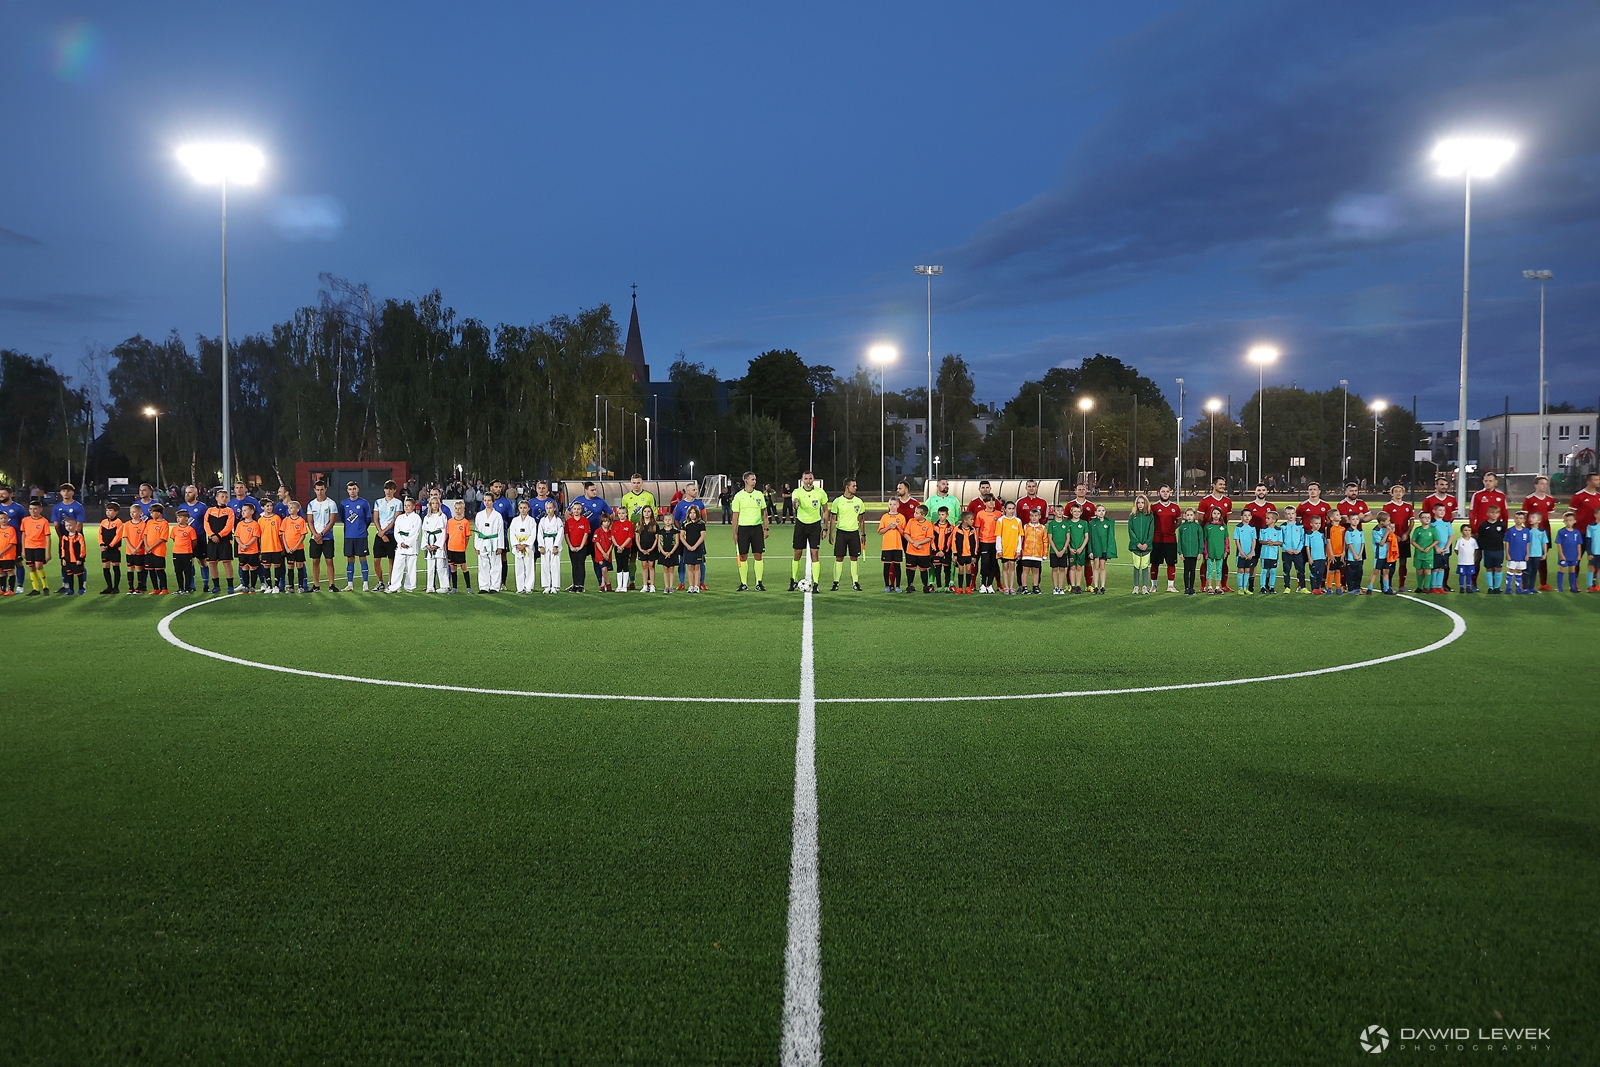 Na zdjęciu widać dwie drużyny piłkarskie stojące w rzędzie na boisku do piłki nożnej. Przed piłkarzami stoją dzieci, między drużynami stoi trzech sędziów.